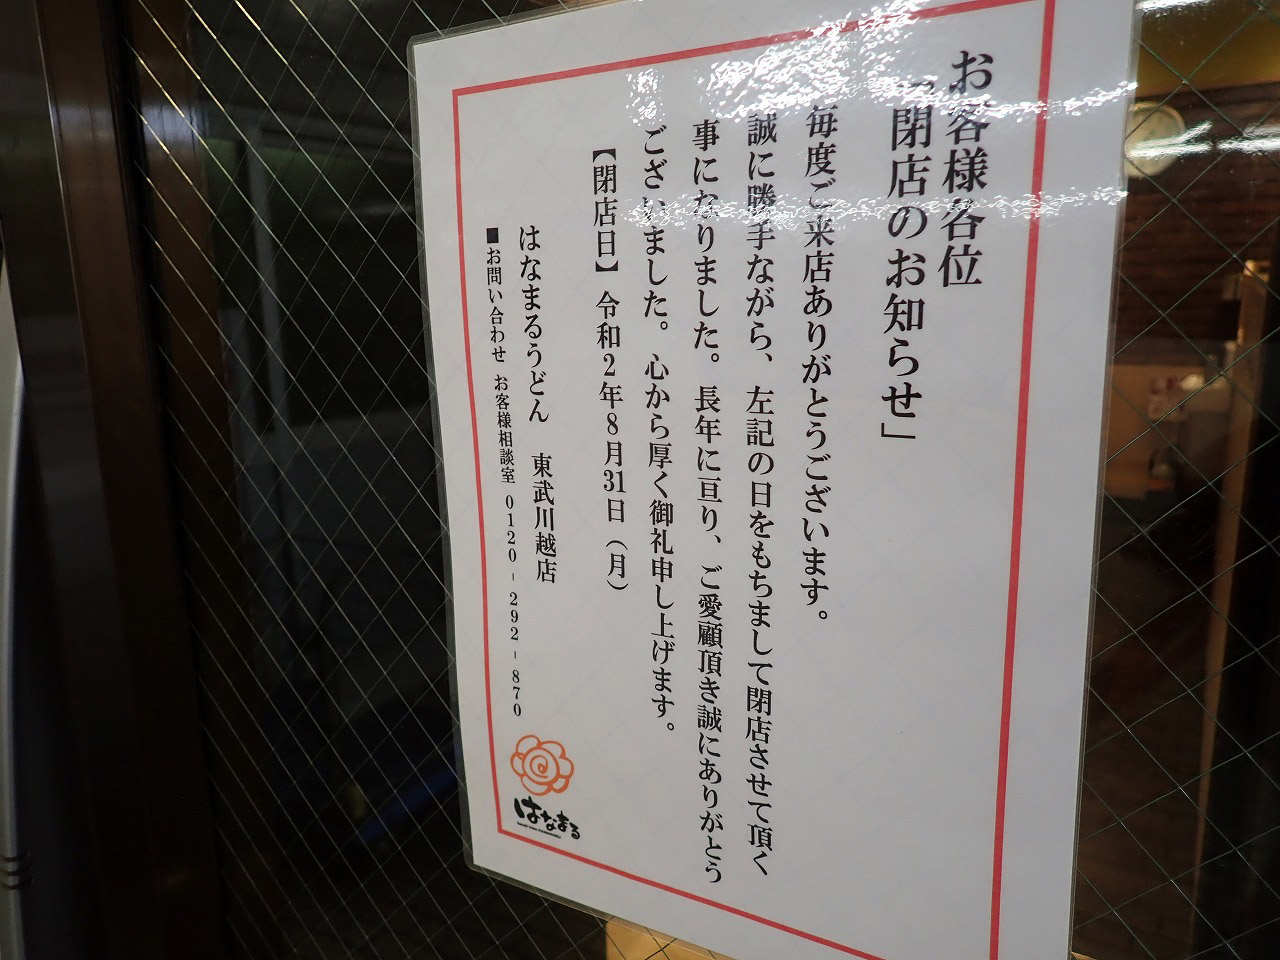 『はなまるうどん・東武川越駅店』の閉店の案内